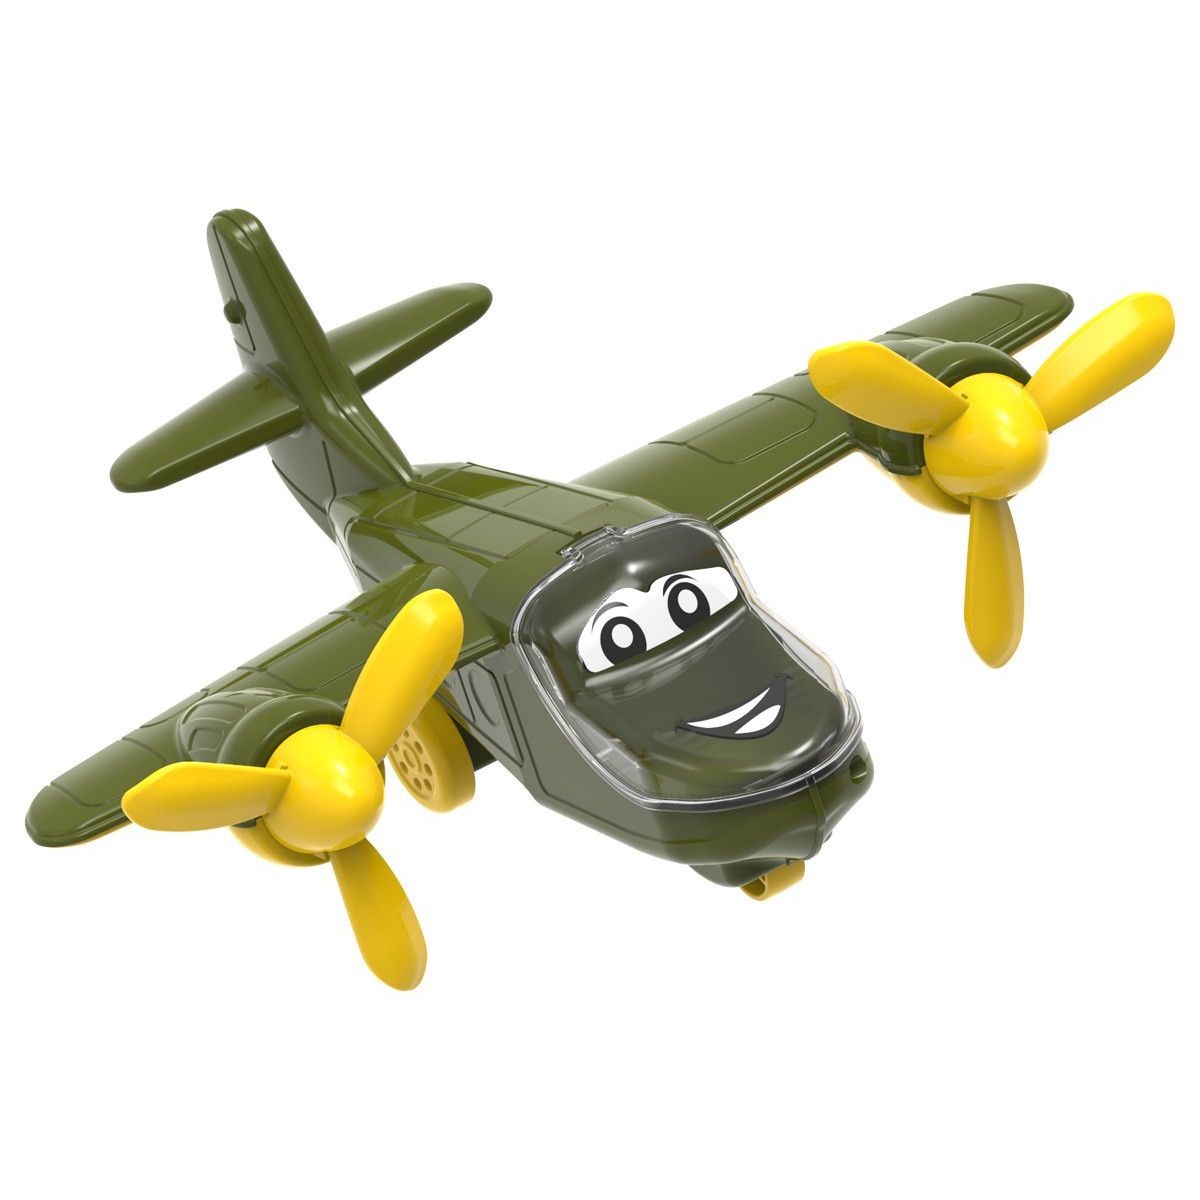 Пластиковая игрушка "Самолет" (зеленый хаки)